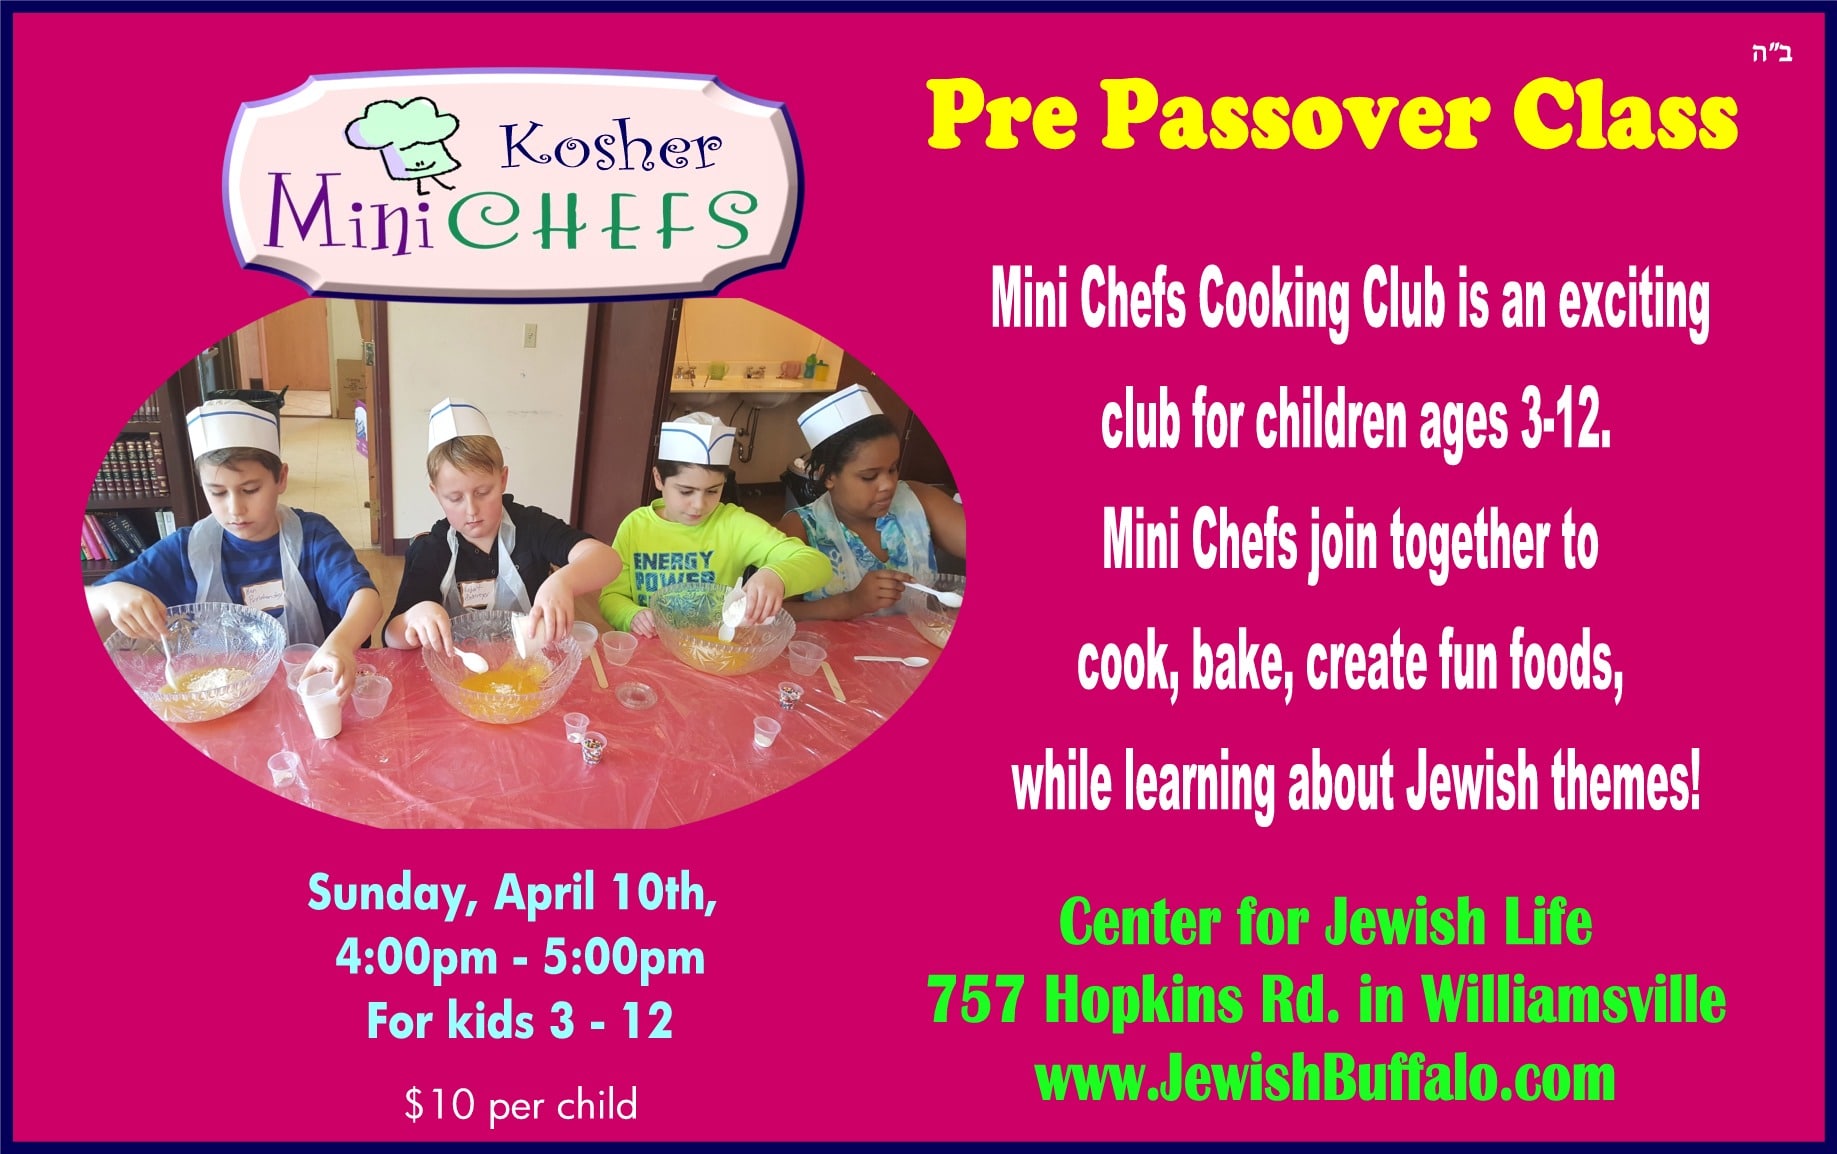 Pre Passover Class - pre passover class